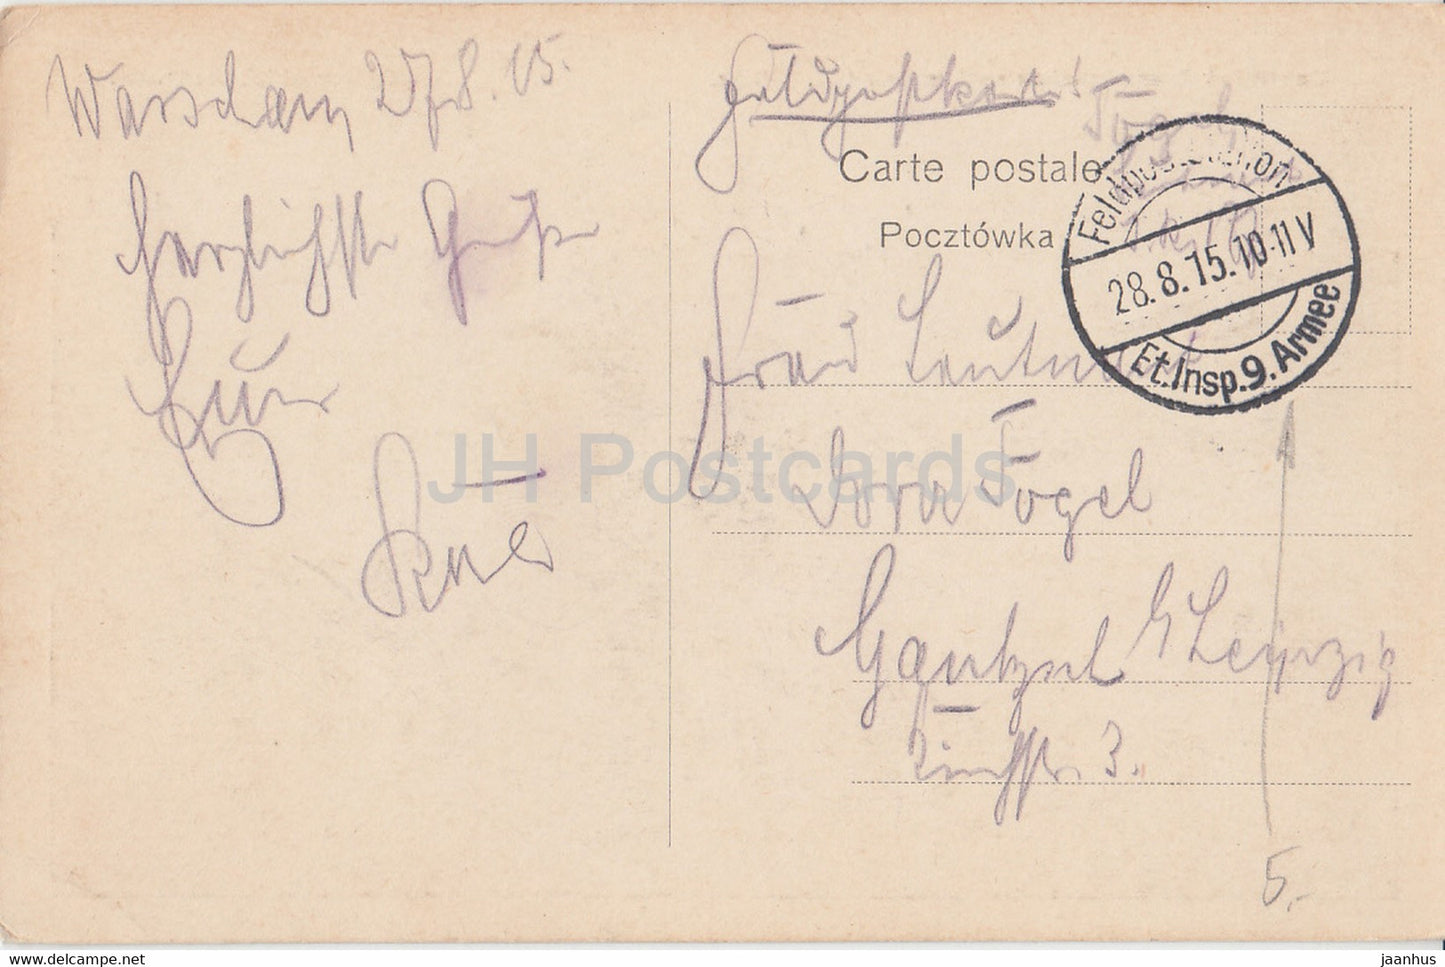 Ueberblick über Warschau und Praga mit 2 Brücken - Ogolny widok Warszawy - Feldpost - alte Postkarte - 1915 - Polen - gebraucht